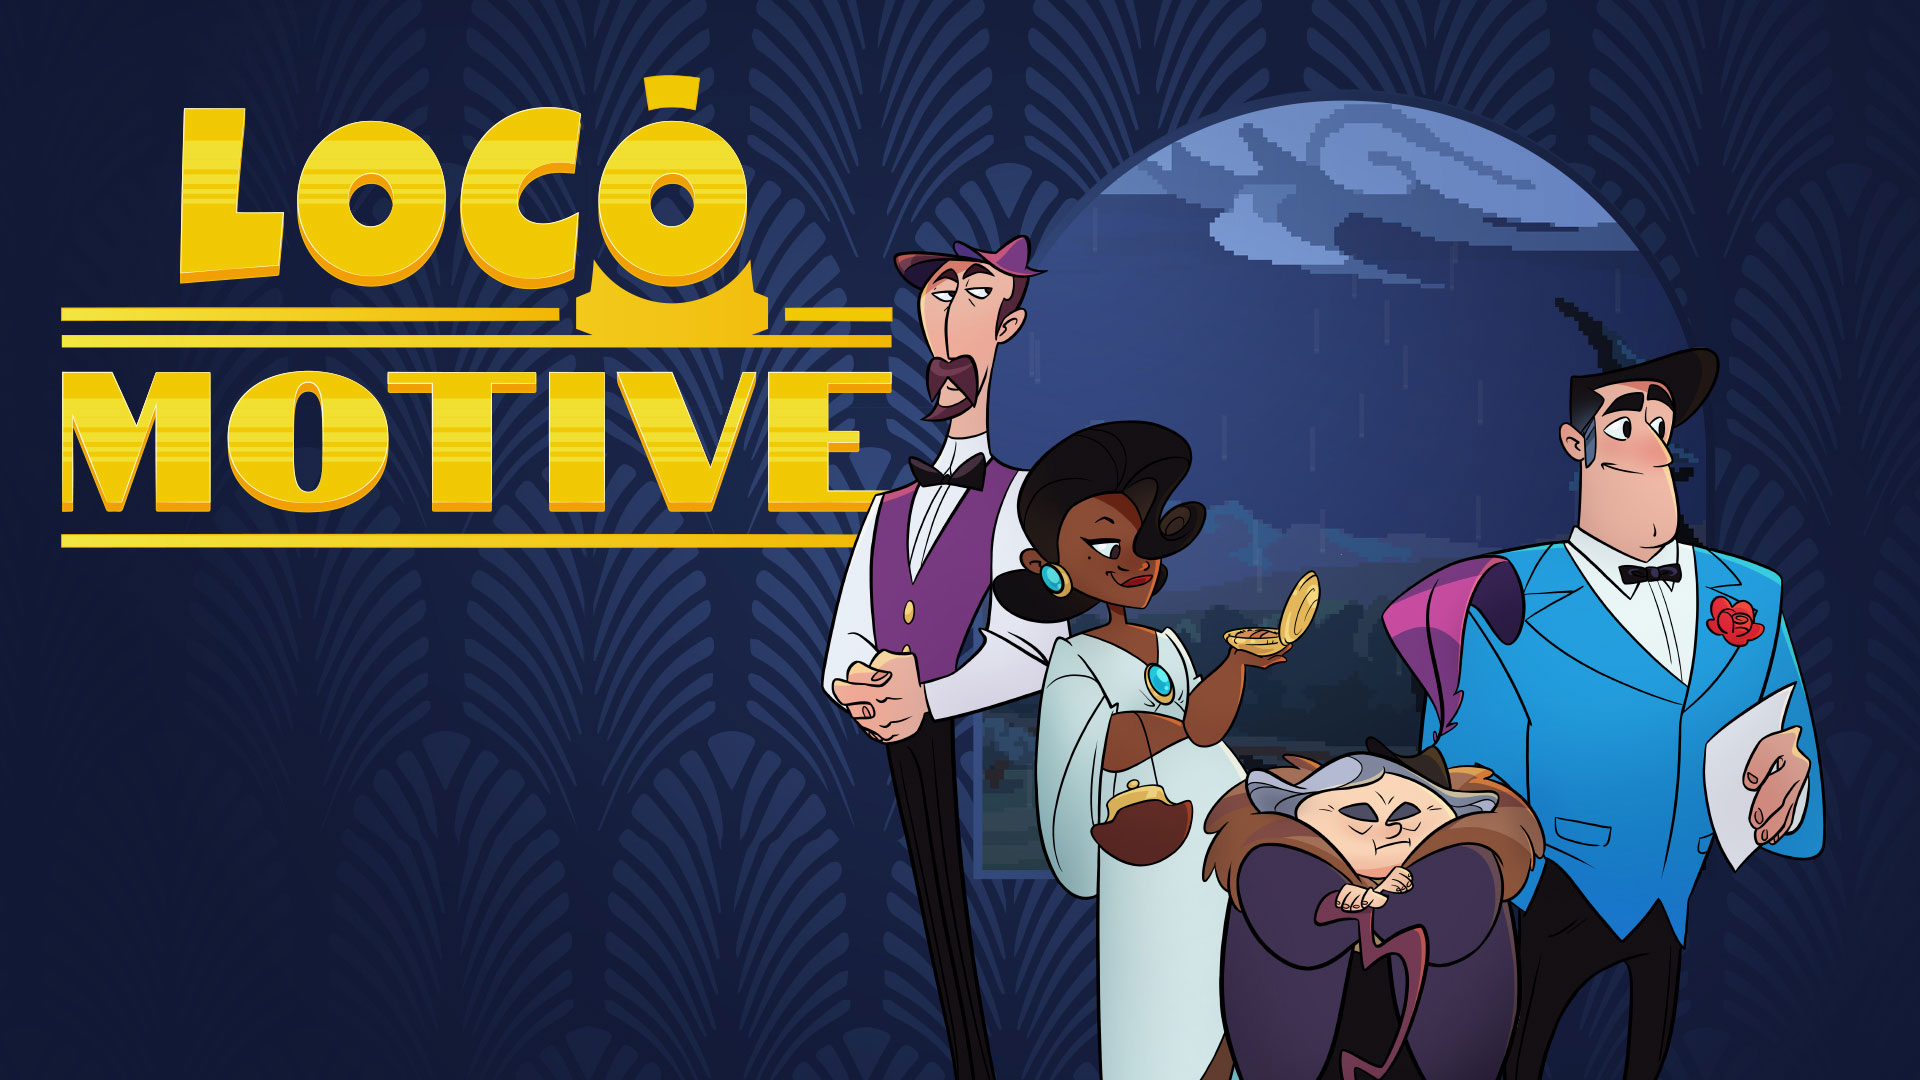 معرفی بازی Loco Motive با پخش تریلر توسط شرکت ناشر Stardew Valley